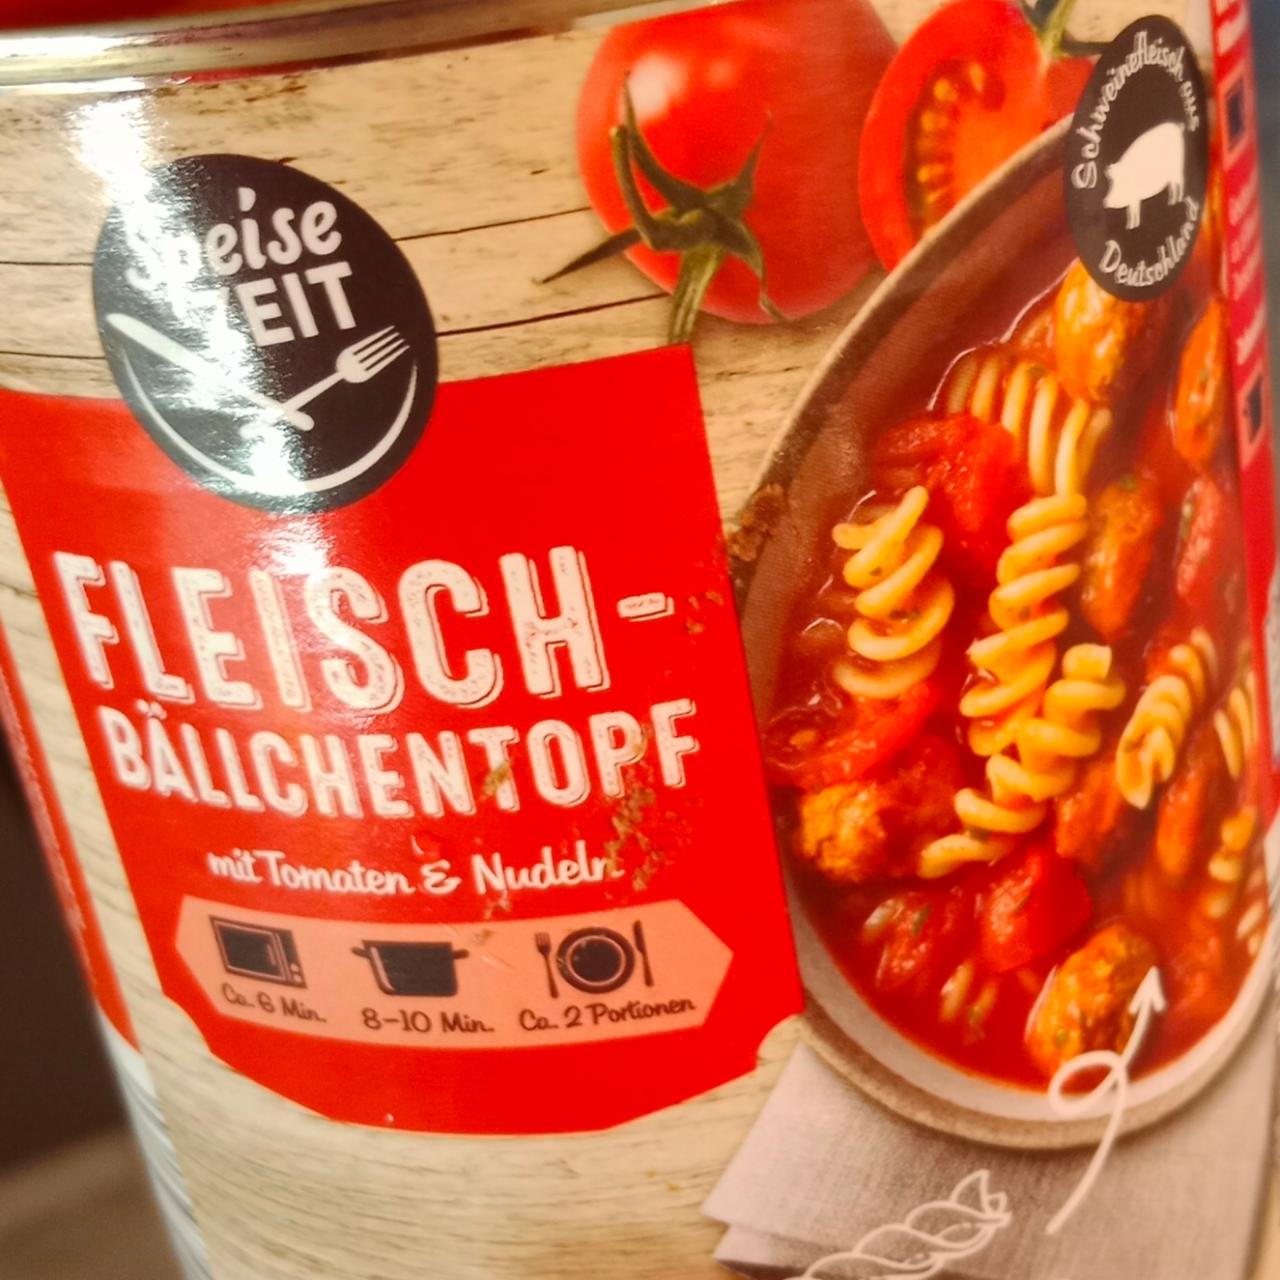 Fotografie - Fleisch-bällchentopf mit tomaten & nudeln Speise ZEIT